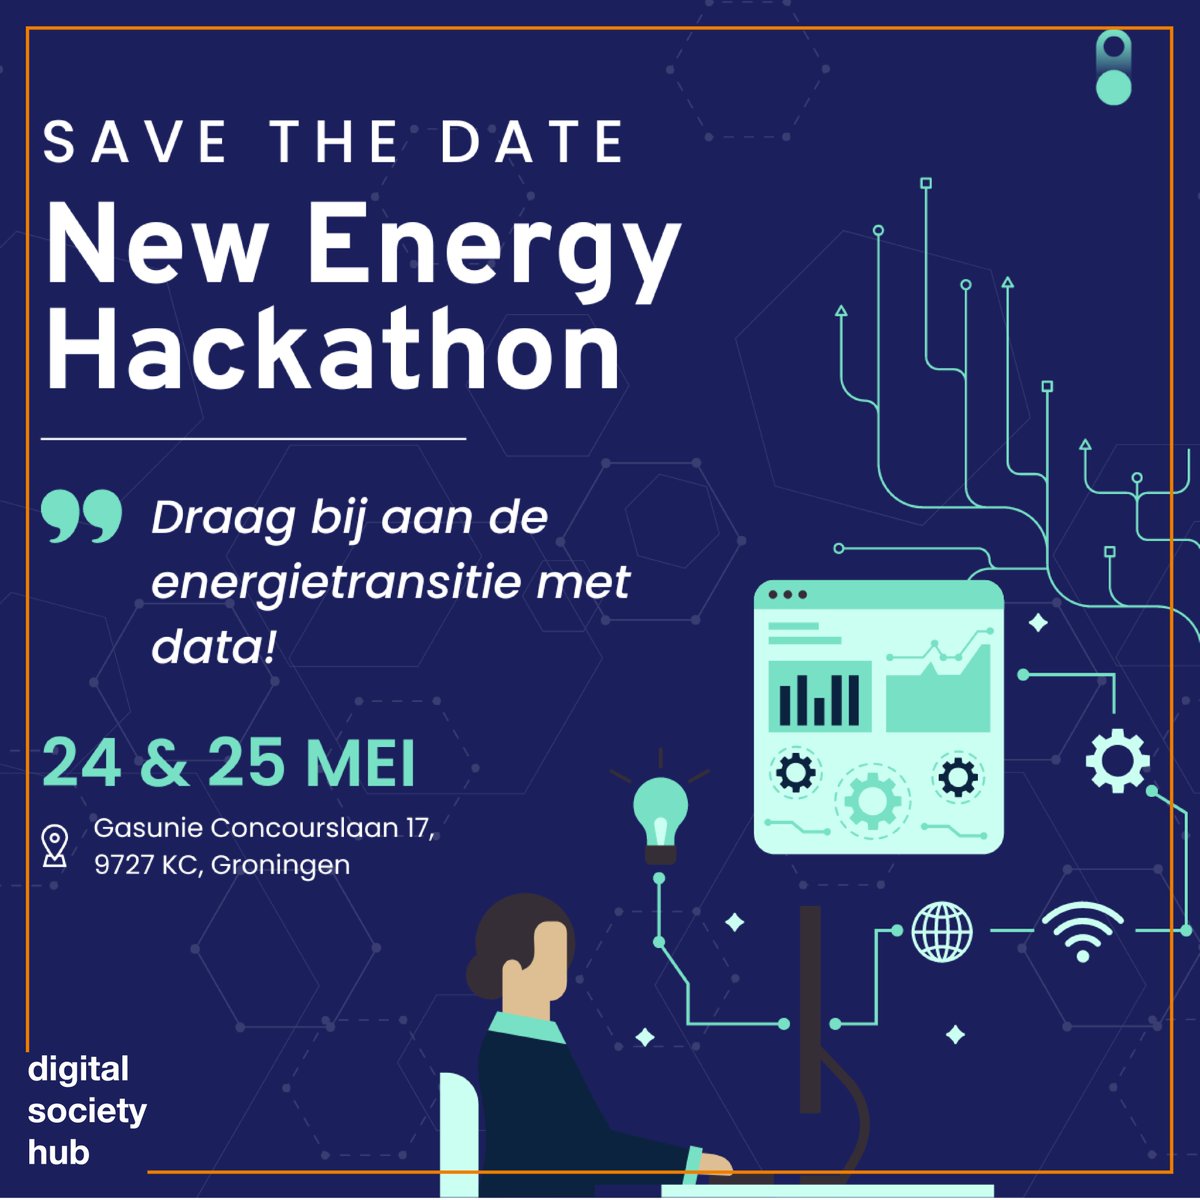 SAVE THE DATE! Op 24 & 25 mei organiseert de @Gasunie de Hackathon New Energy. Duik in de nieuwste datasets over de energiemix en ontwikkel samen oplossingen om maatschappelijke uitdagingen aan te pakken! meer info en inschrijven via: gasunie.nl/new-energy-hac…